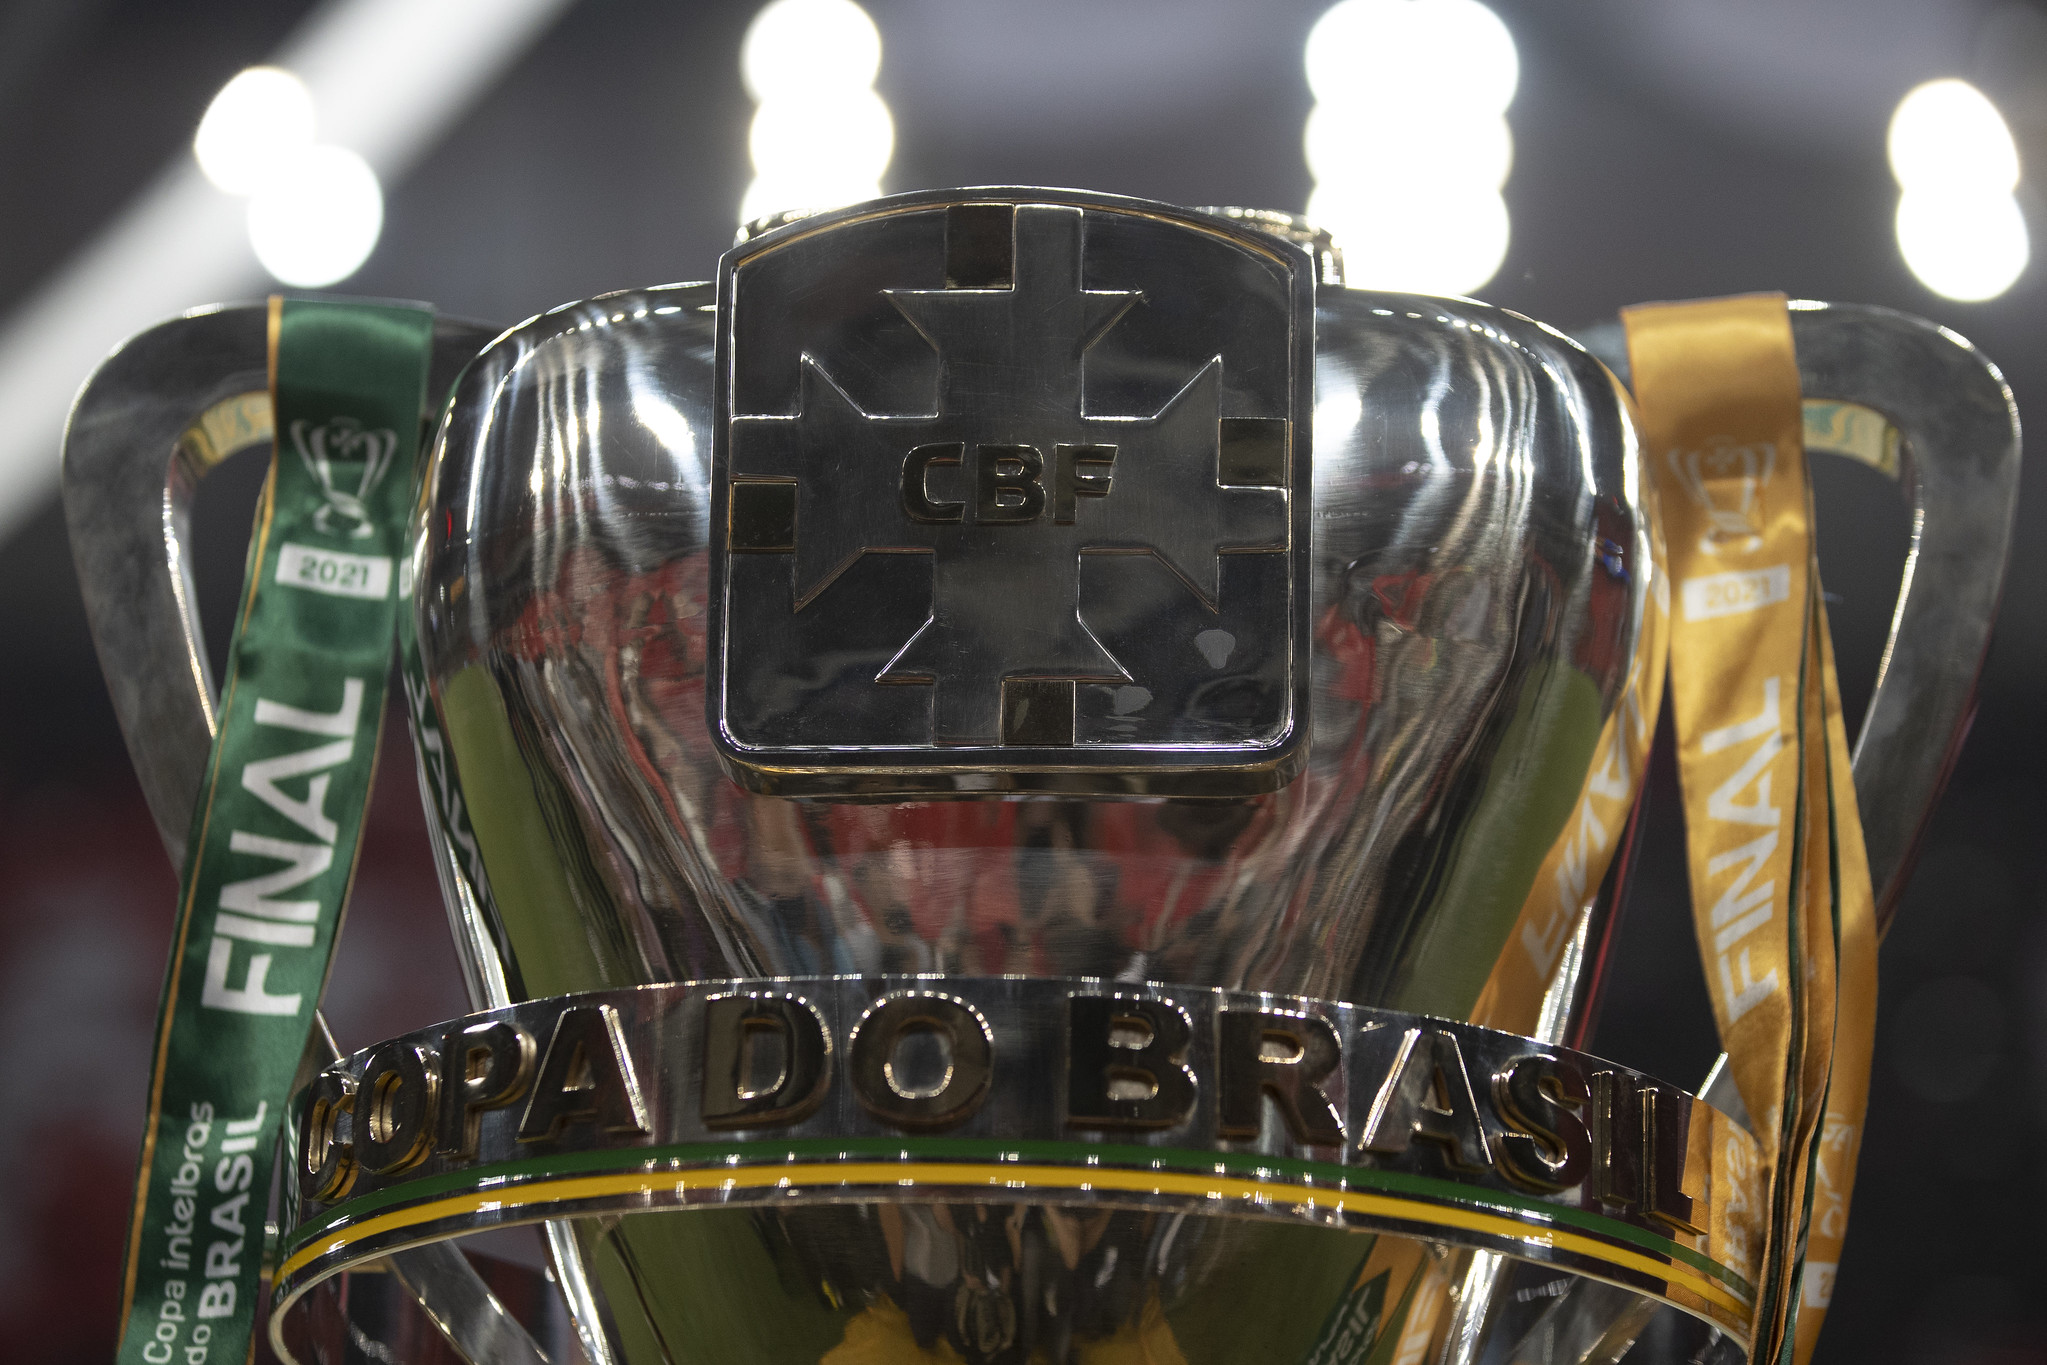 CBF anuncia dias e horários das finais da Copa do Brasil entre